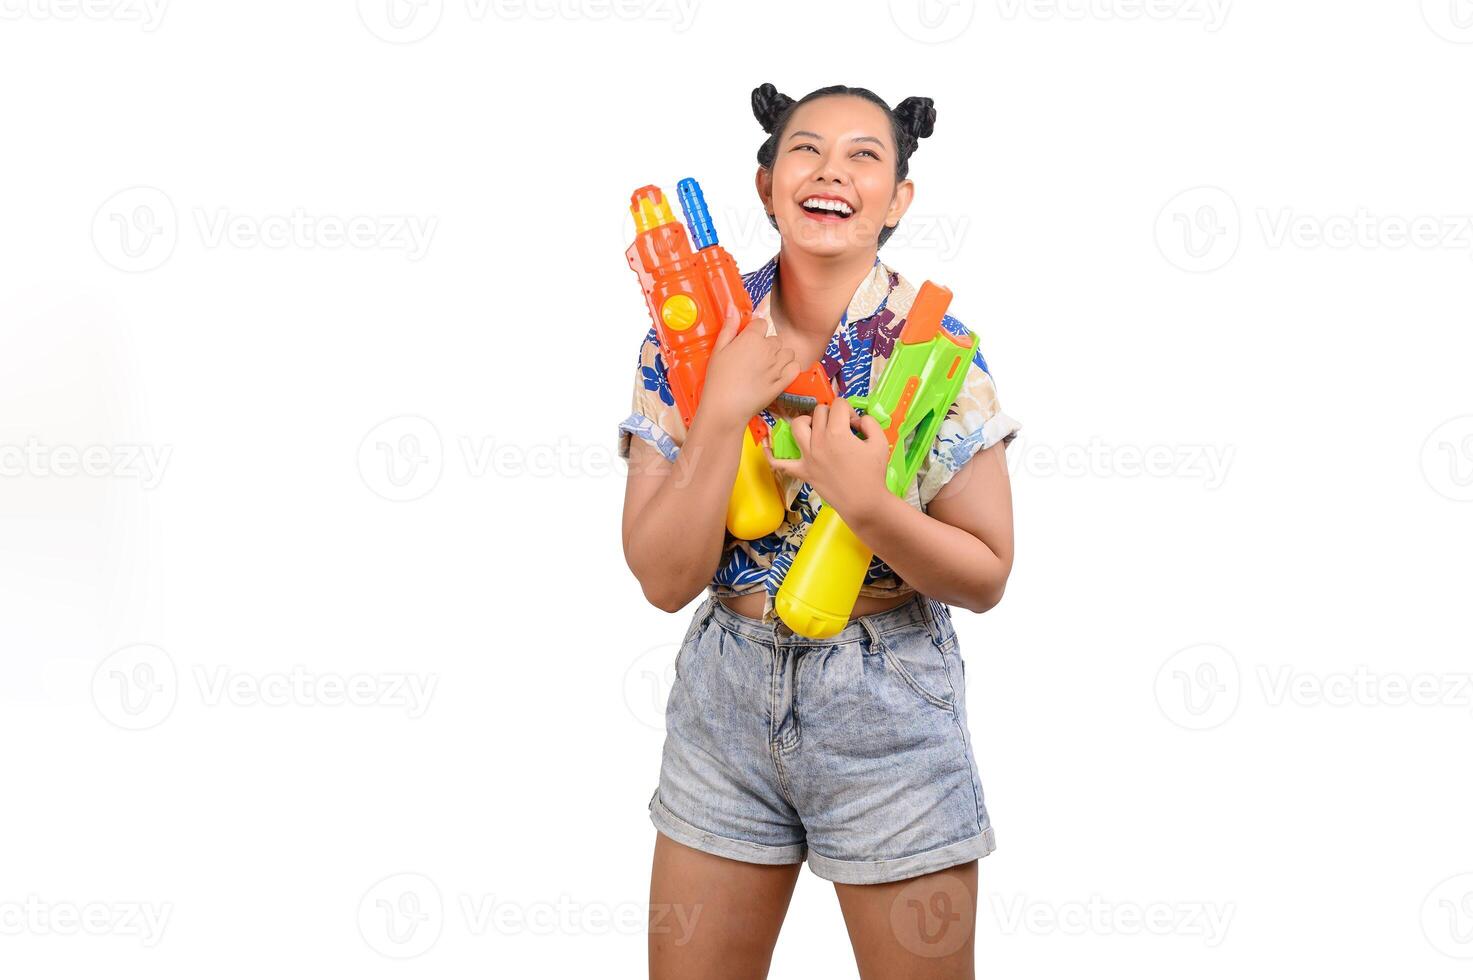 ritratto smiley donna nel Songkran Festival con acqua pistola foto